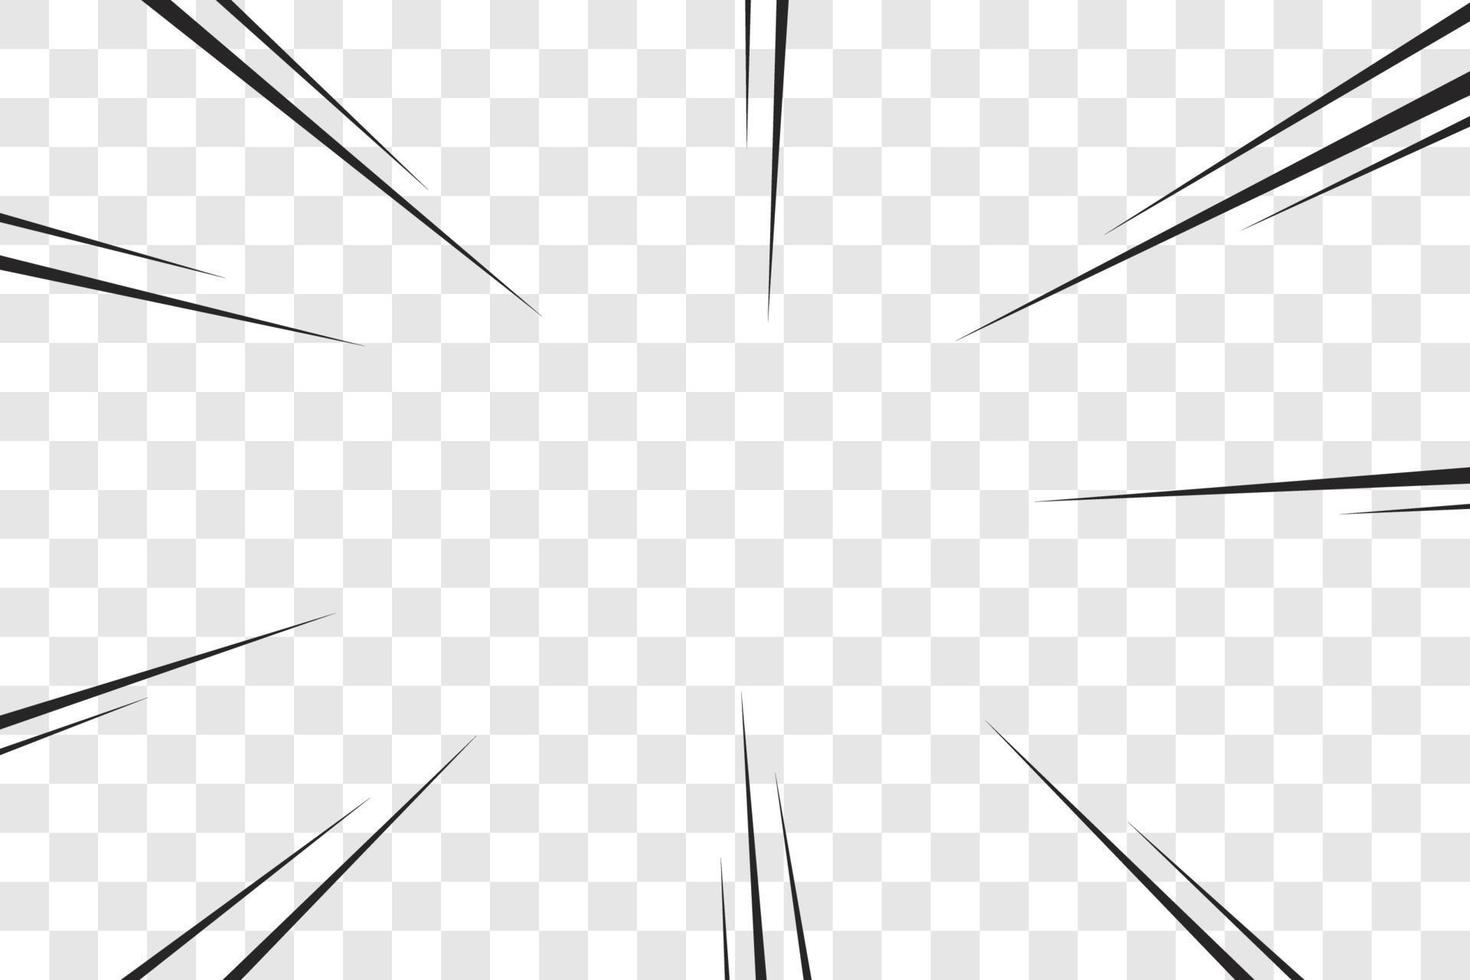 manga acción marco velocidad líneas simples movimiento líneas radiales aisladas sobre fondo transparente abstracto explosivo plantilla banner blanco y negro monocromo vector retro ilustración cómic elemento